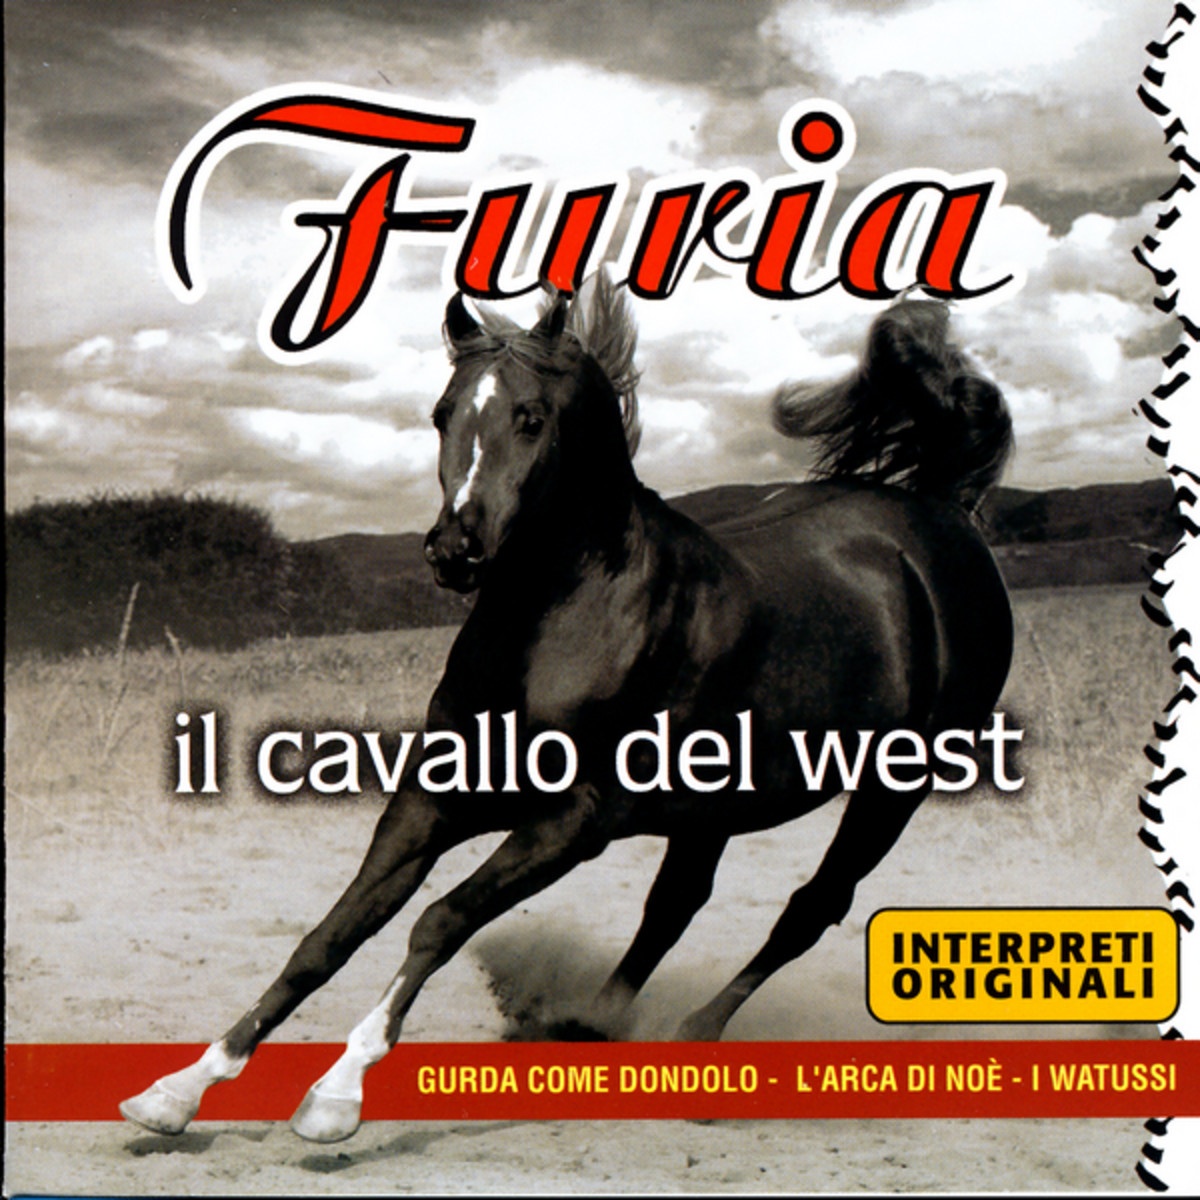 Furia, Il Cavallo Del West